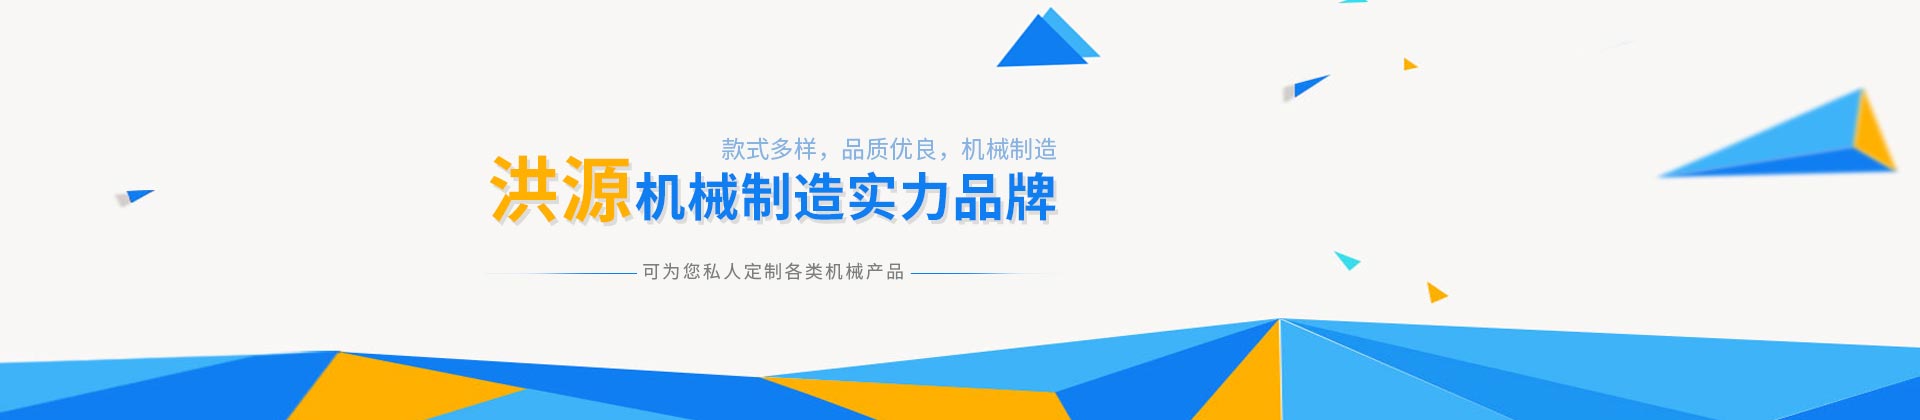 武汉垂直提升尊龙游戏平台(中国)股份有限公司